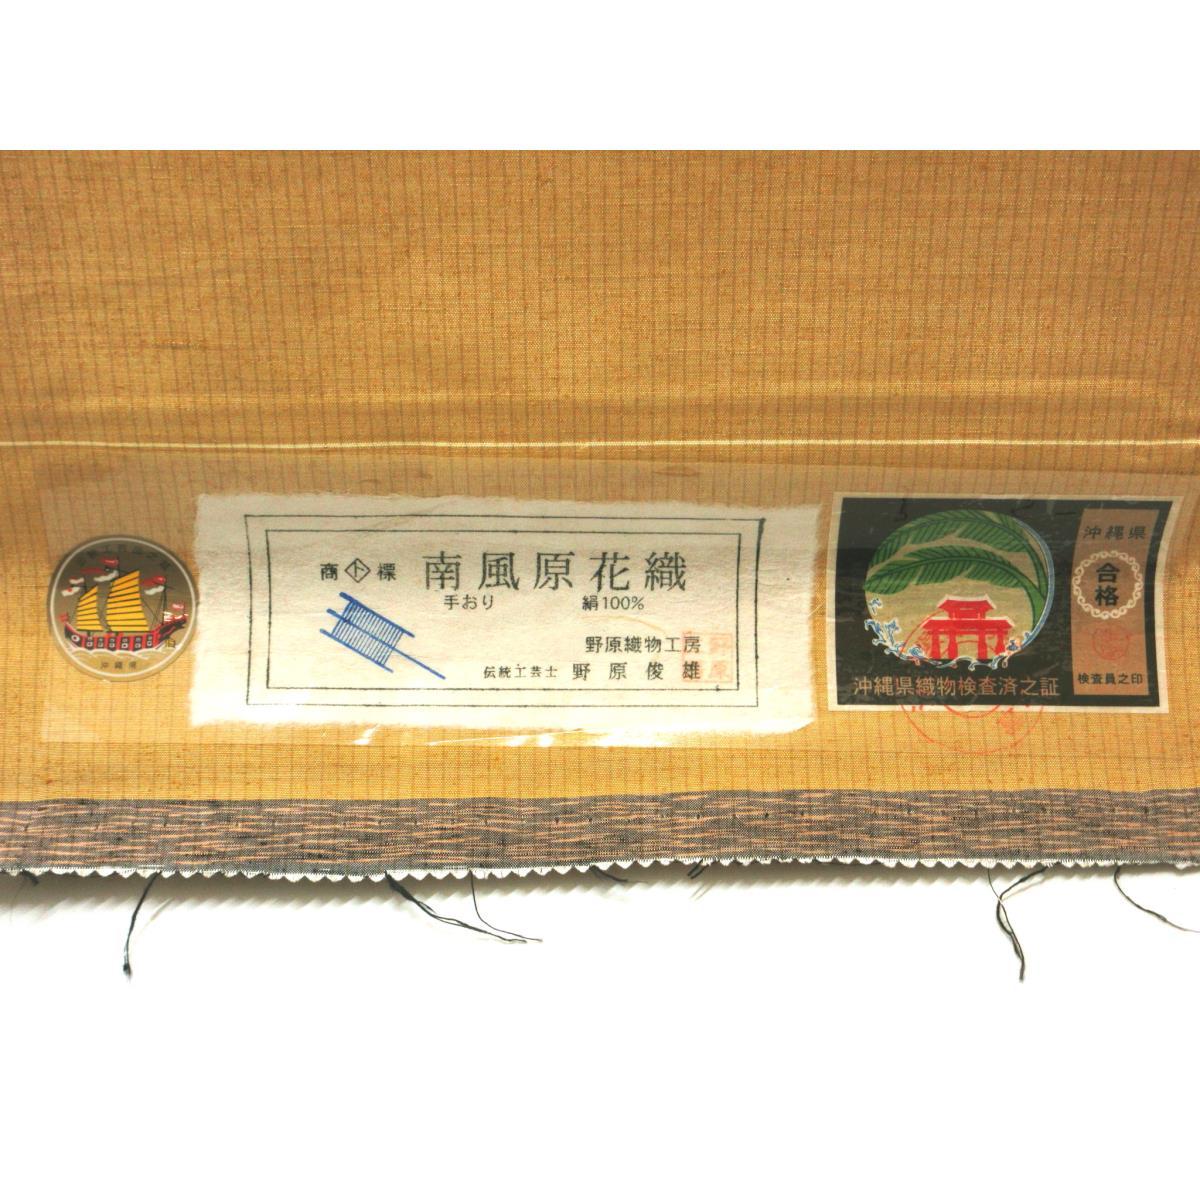 [Unused items] Nagoya obi Minami Haebaru Hanaori untailored item